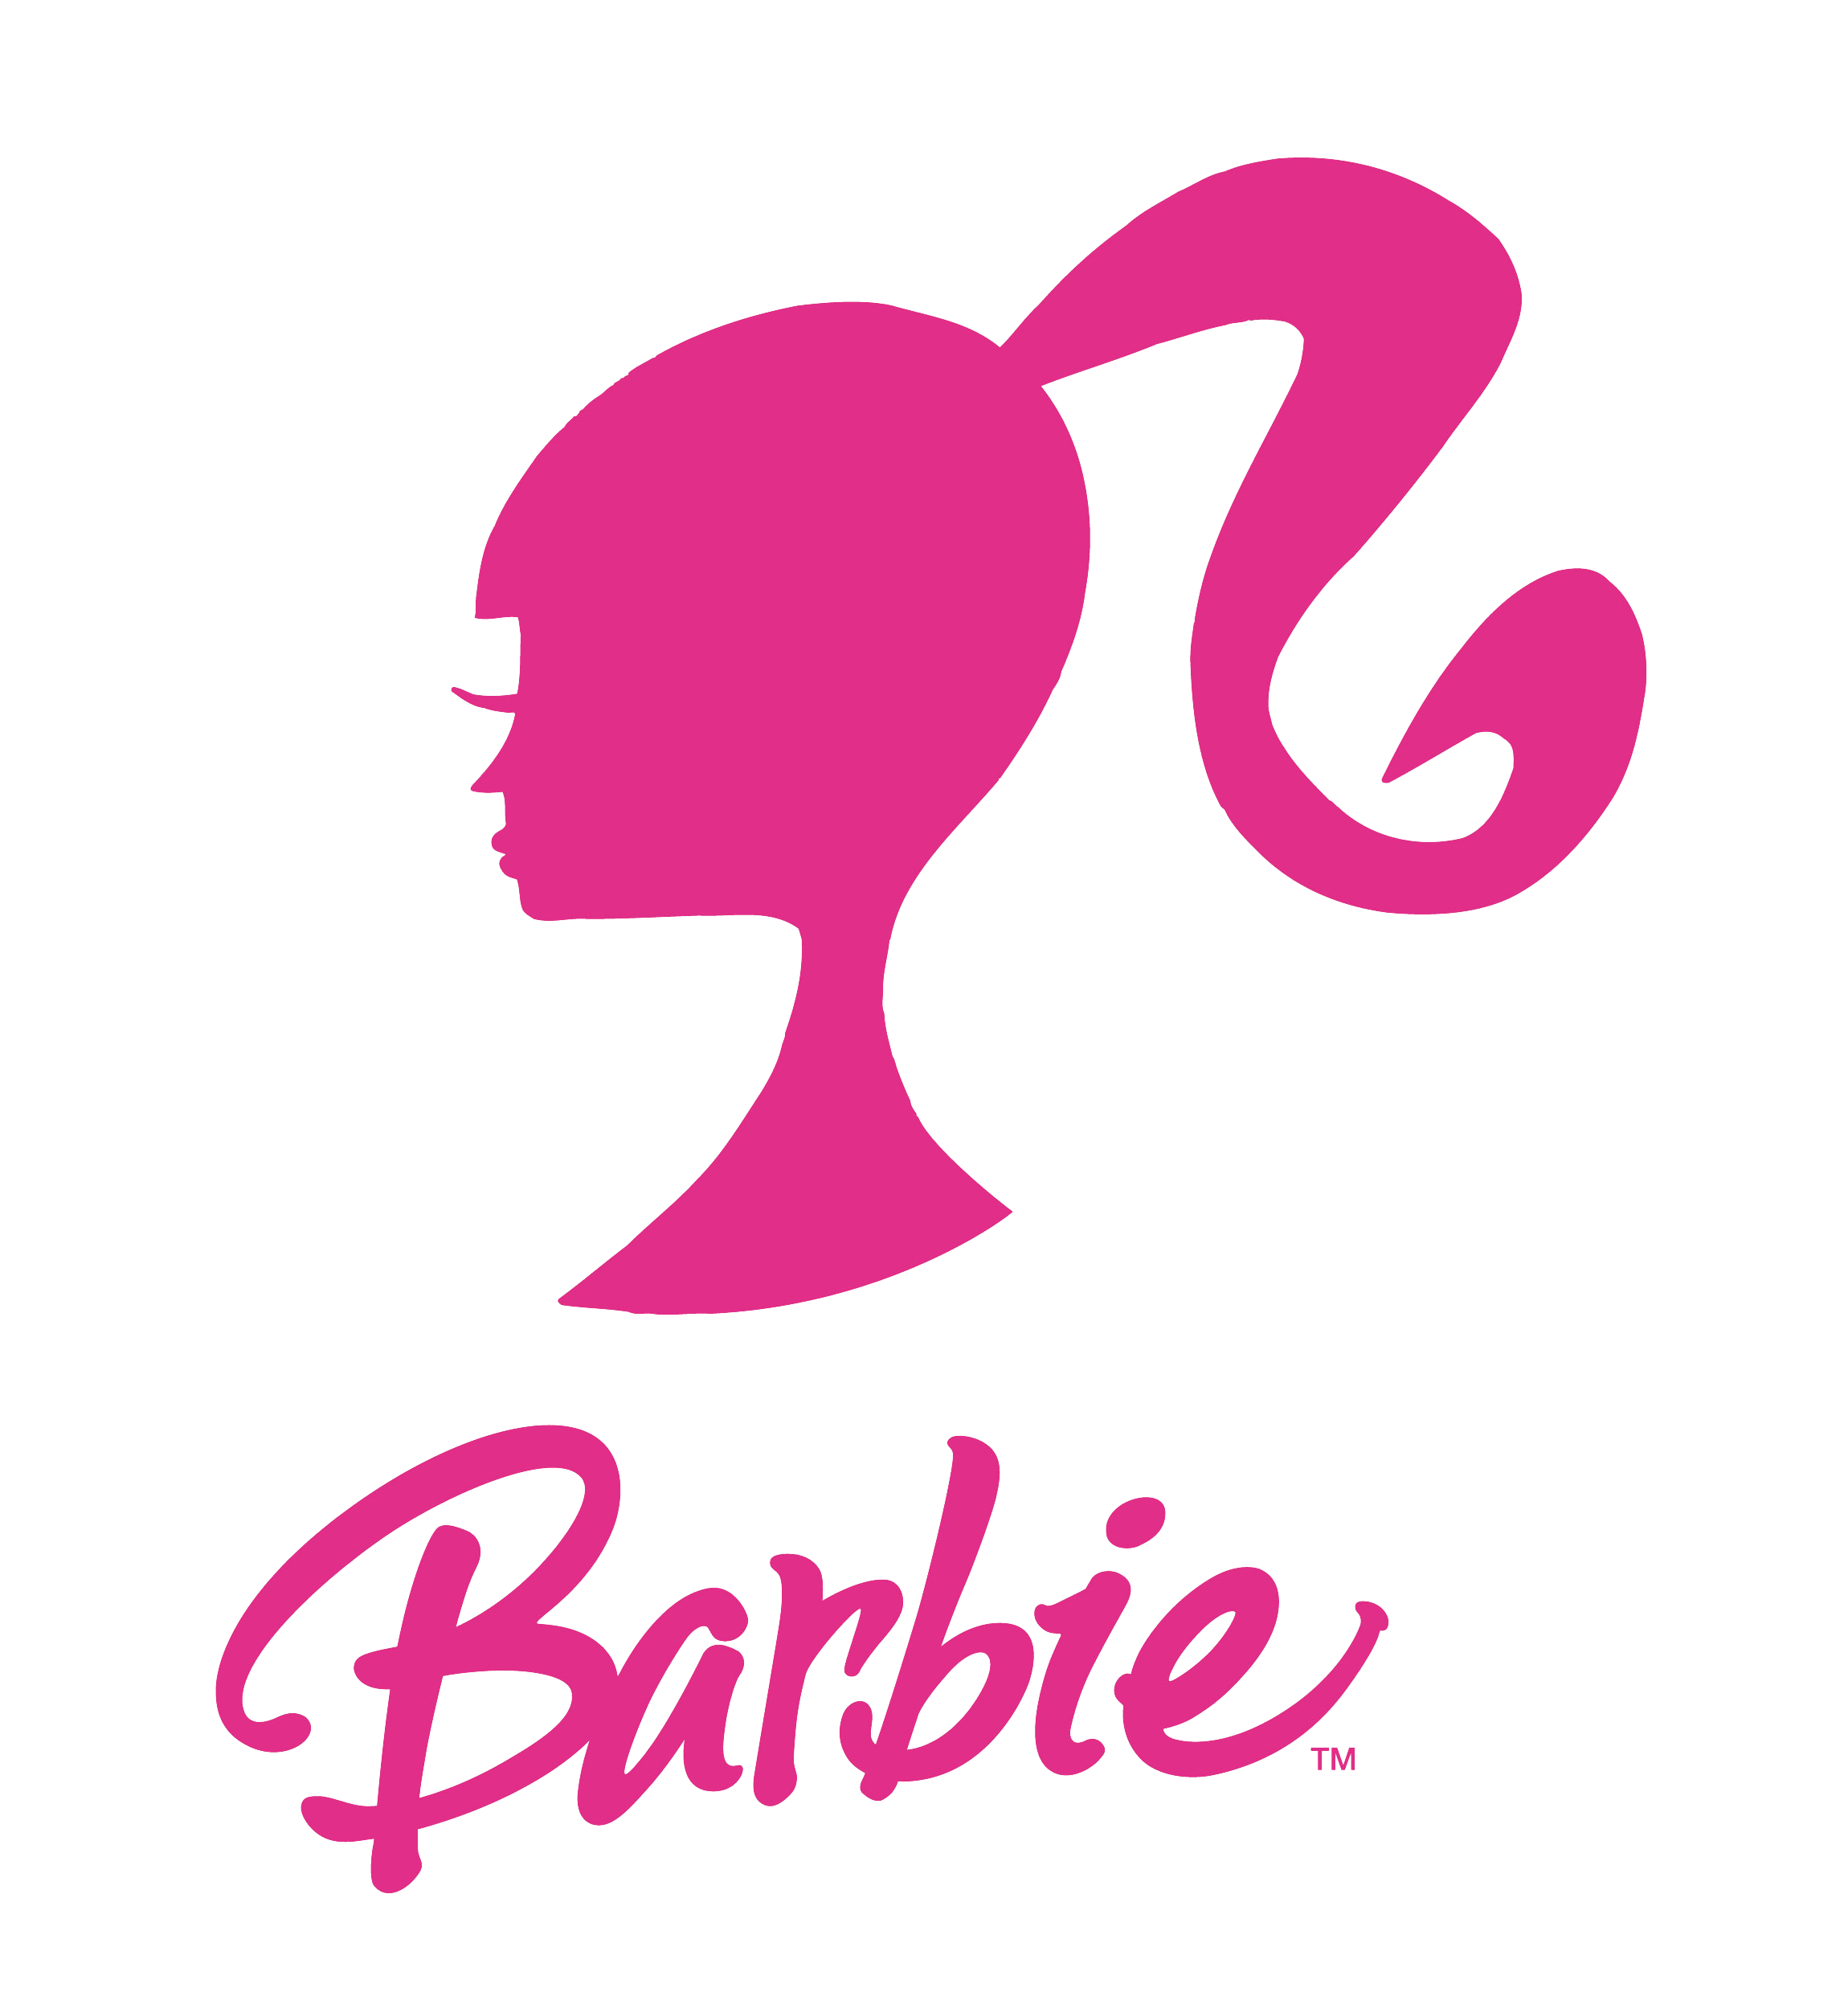 Barbie Logo Transparent Image PNG Image